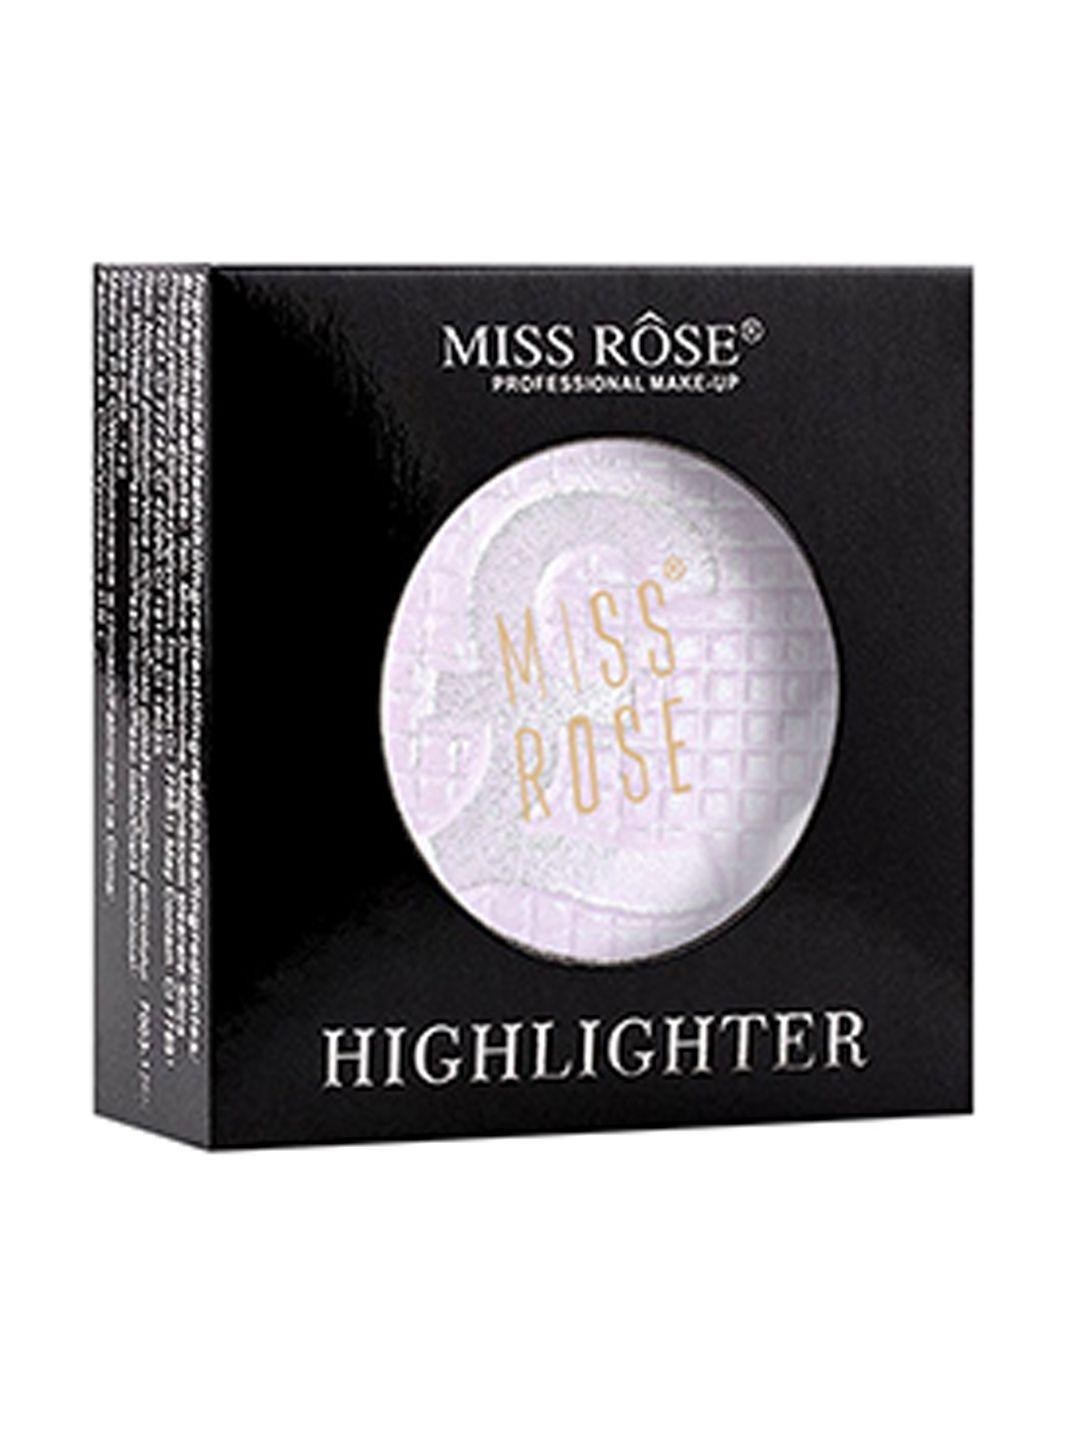 miss rose skin perfector brick highlighter 7003-126n 03 purple